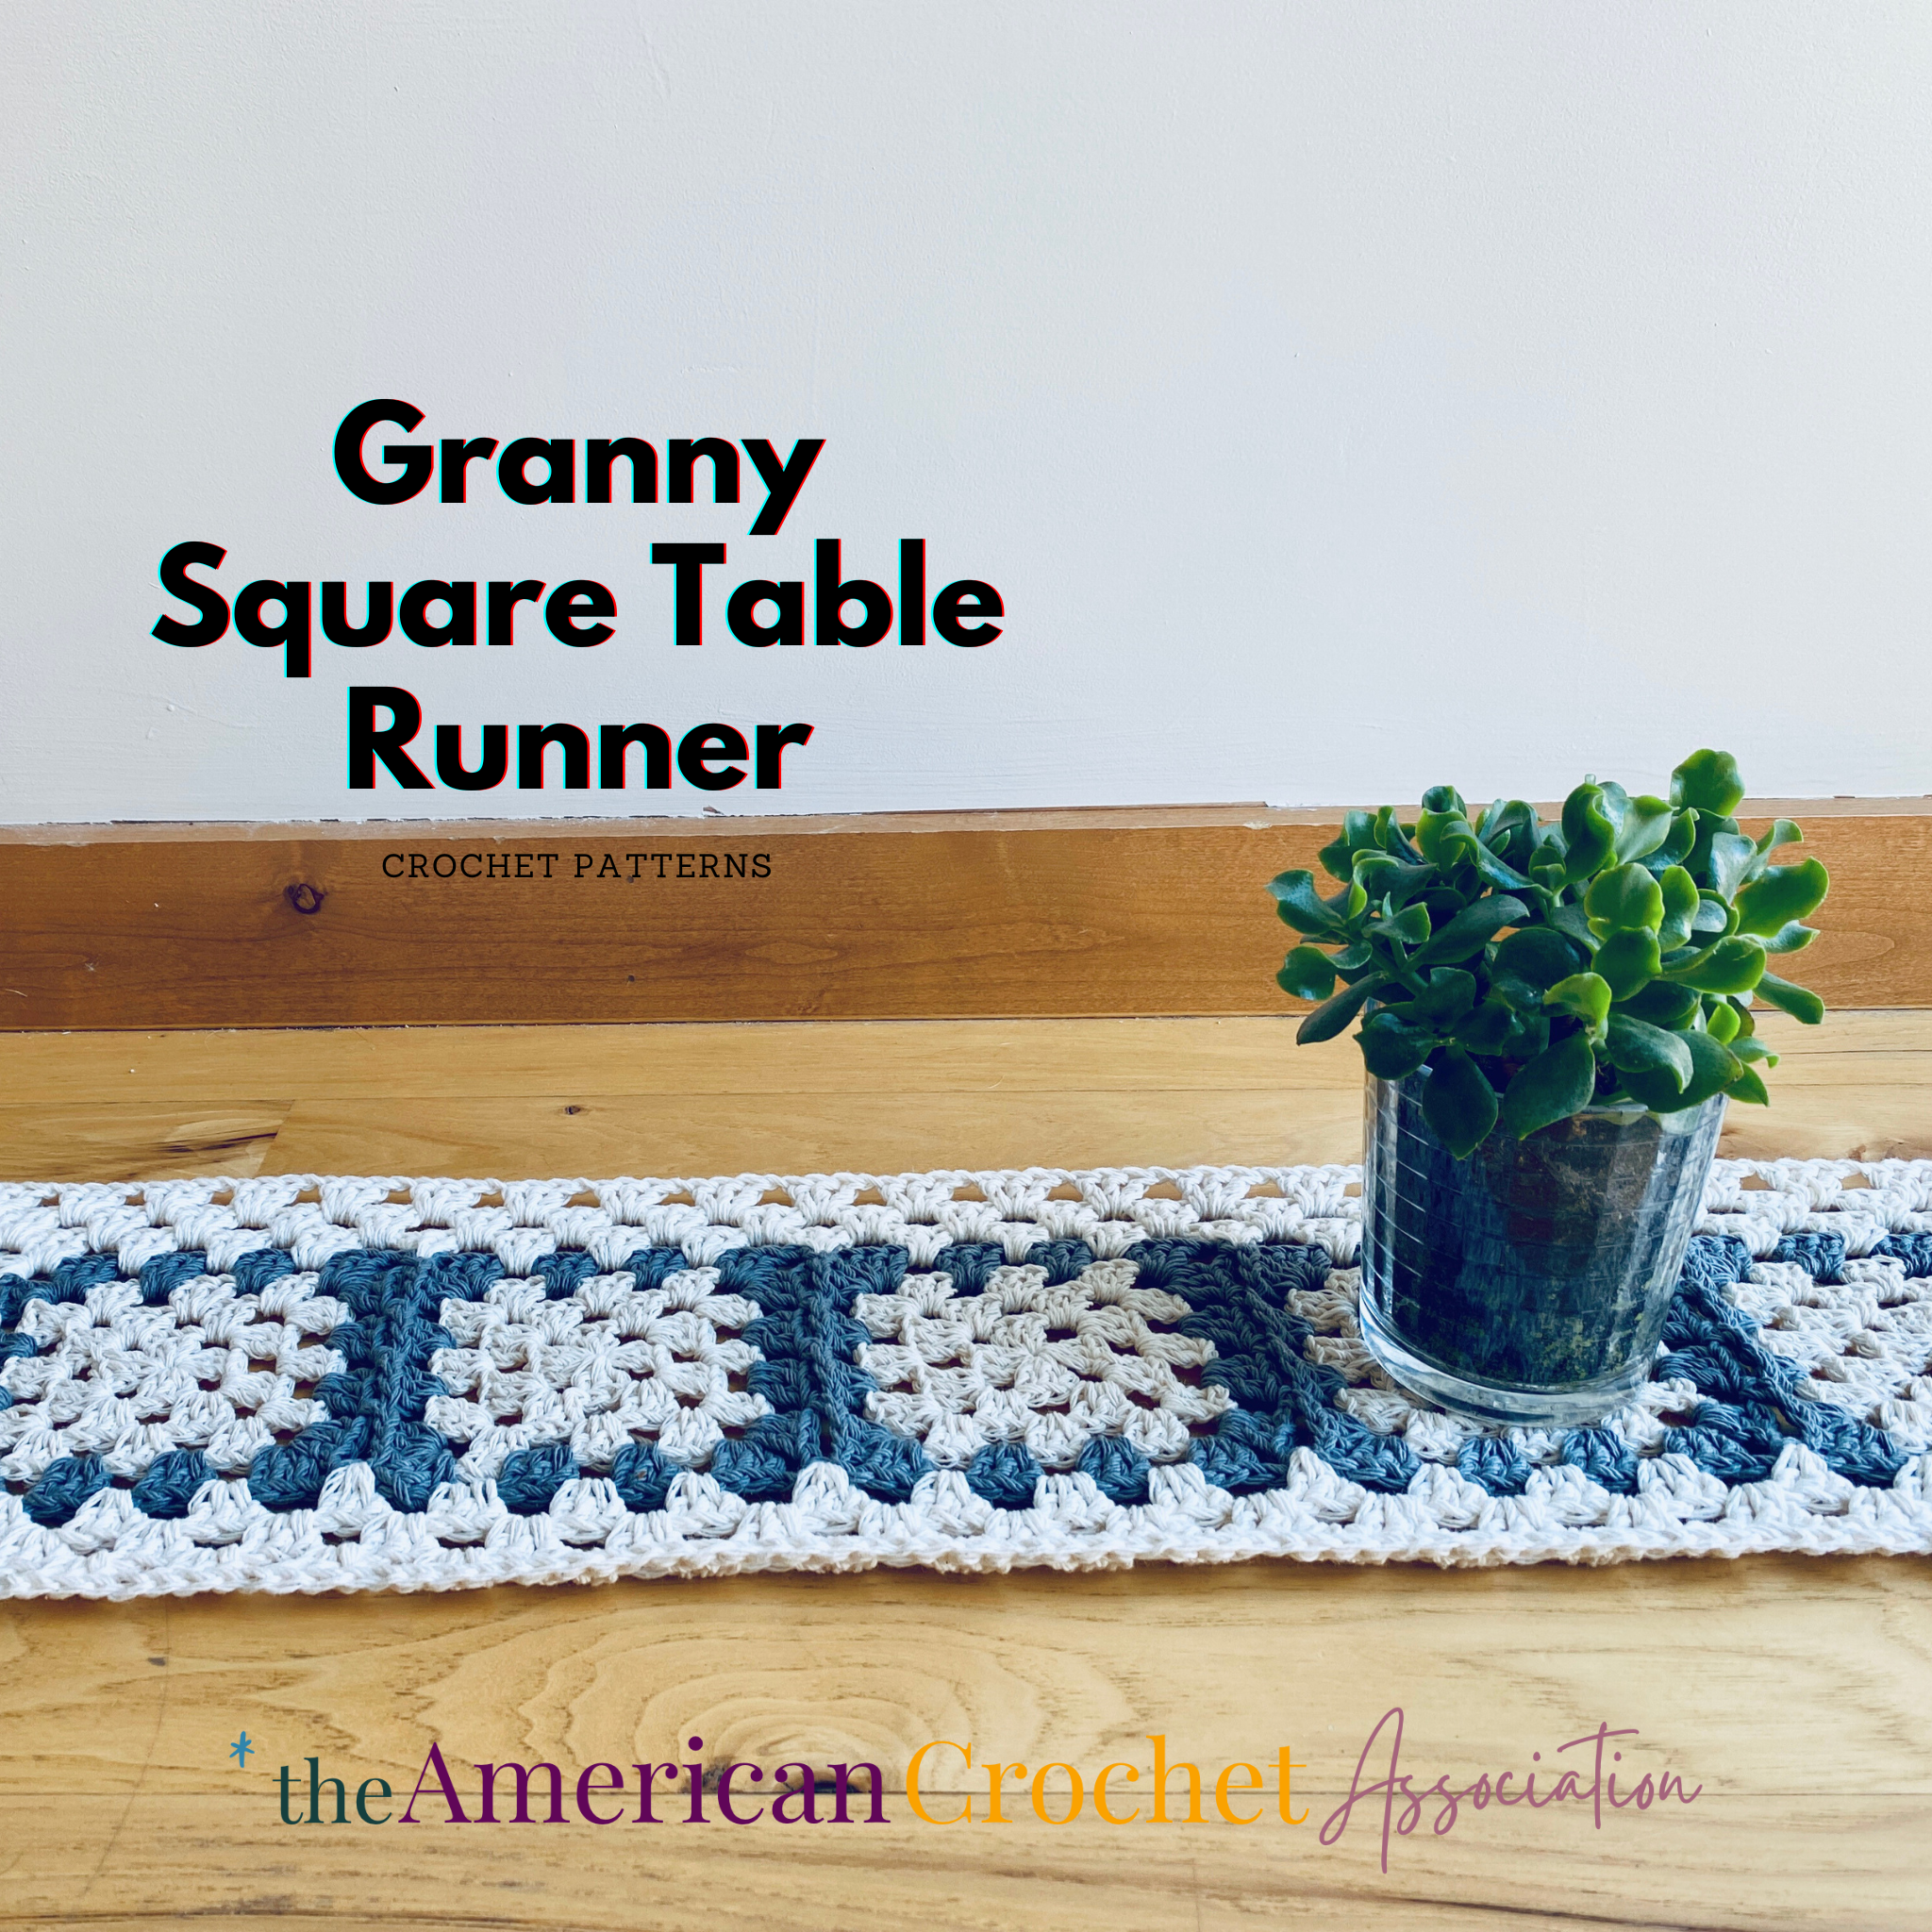 Granny Square Table Runner on on wooden floors Crochet Pattern - American Crochet Association